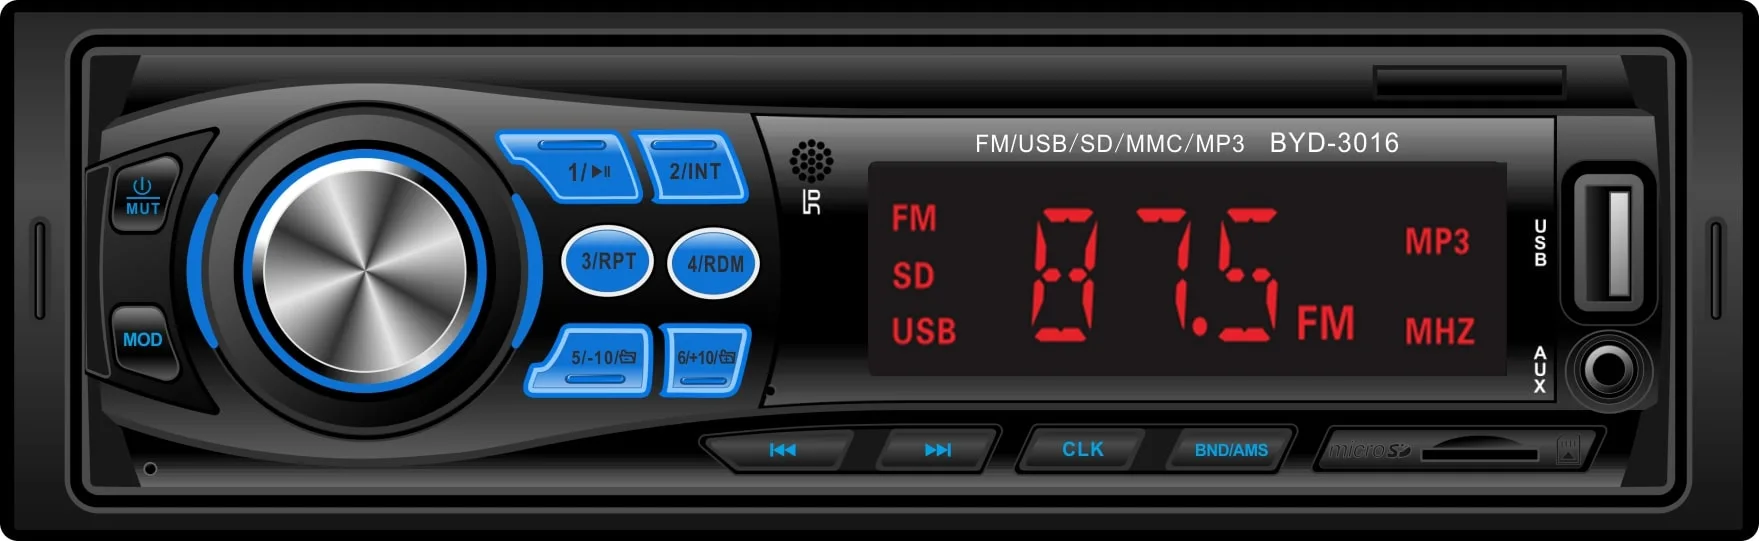 Ремонт автомобиля 1 DIN MP3 проигрыватель аудио система